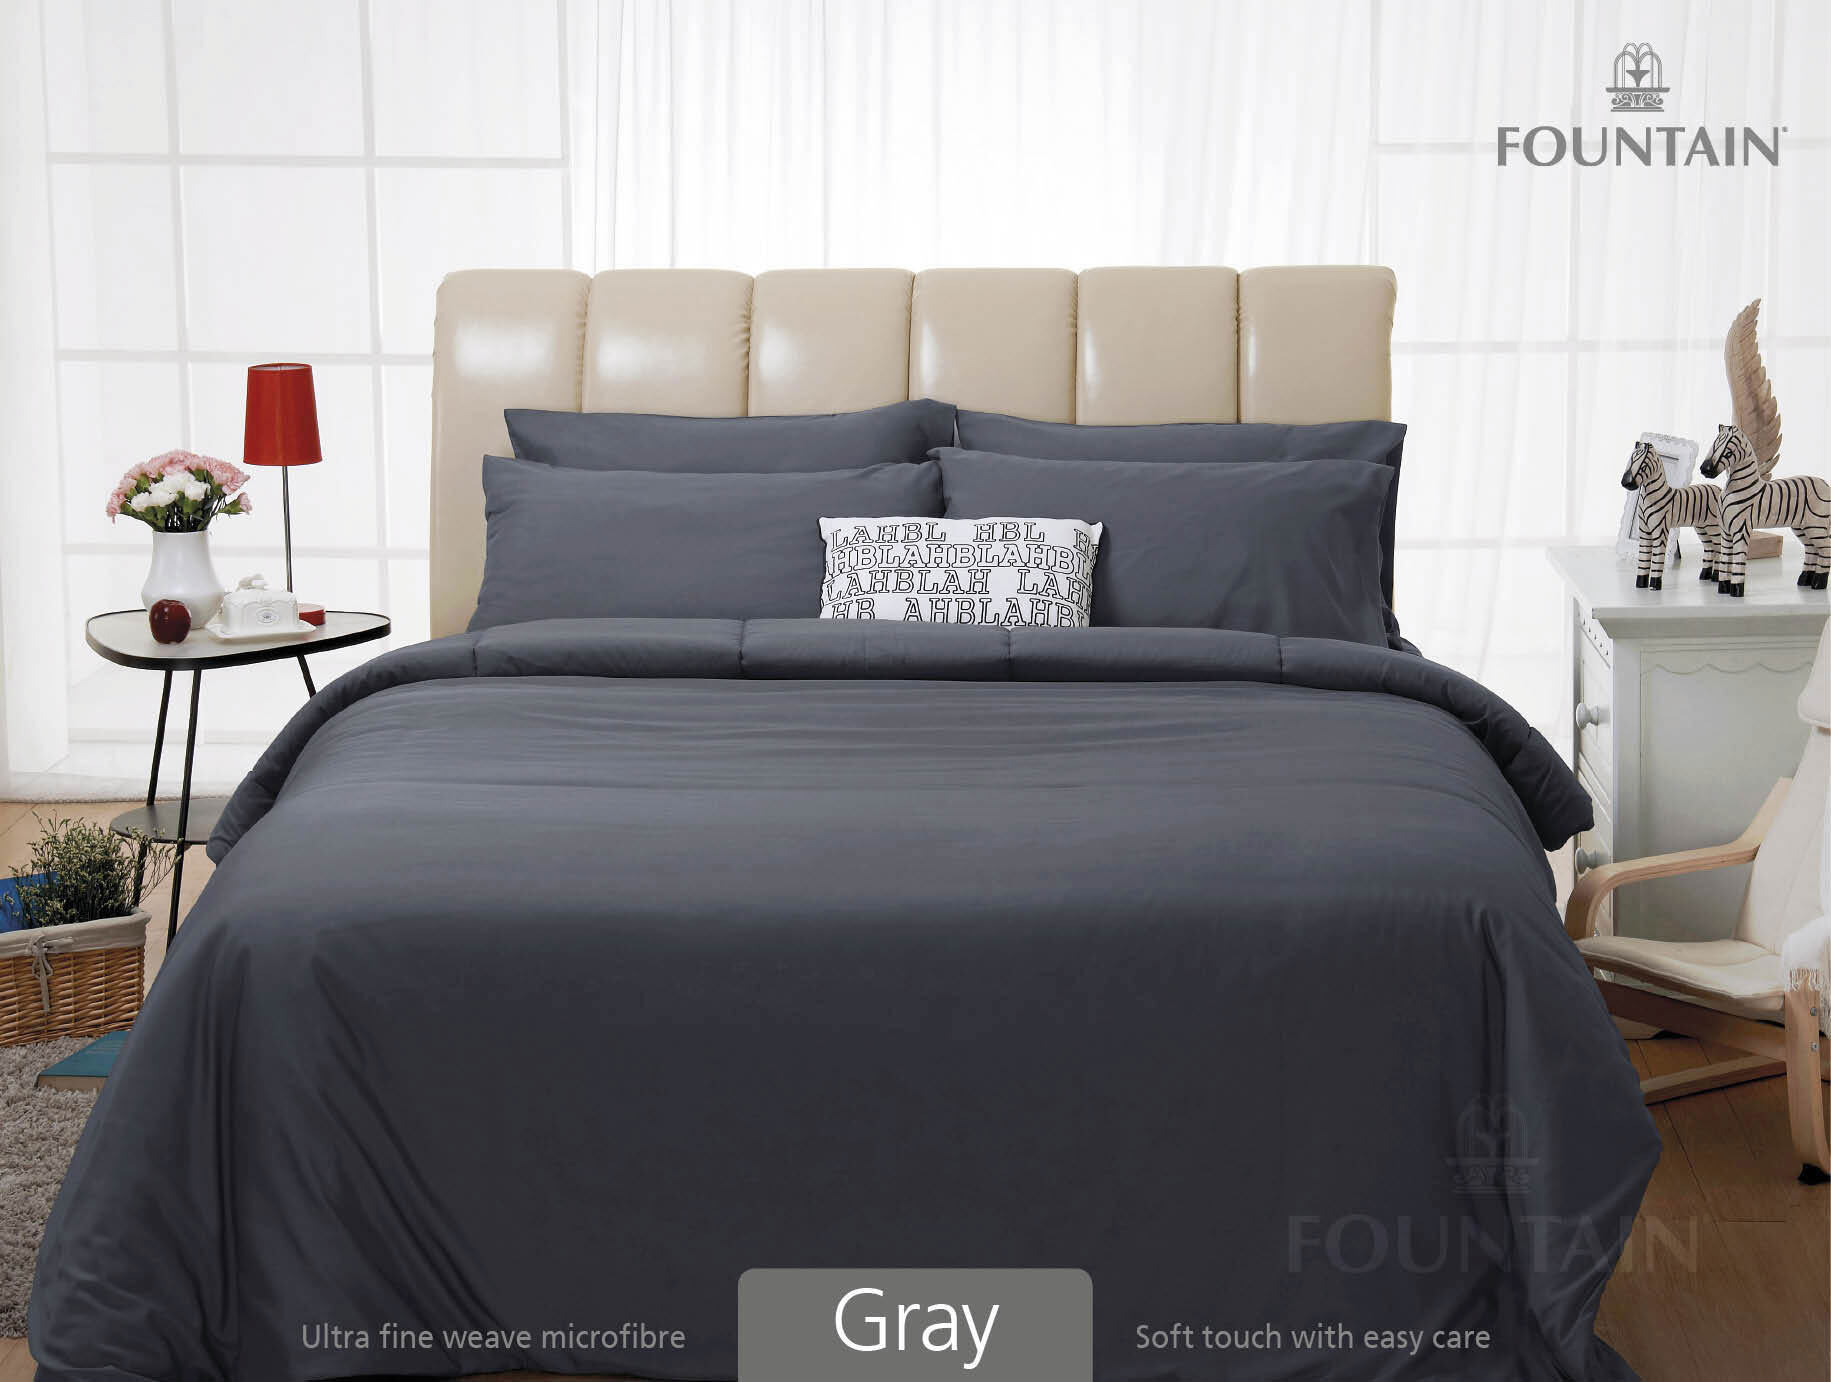 FOUNTAIN ผ้านวม + ชุดผ้าปู ผ้าปู ที่นอน แท้ 100% FTC สีพื้น เขียว Green Gray เทา ขนาด 3.5 5 6ฟุต ชุดเครื่องนอน ผ้านวม ผ้าปูที่นอน wonderful bedding  สี → Gray3ขนาดสินค้า 5 ฟุต